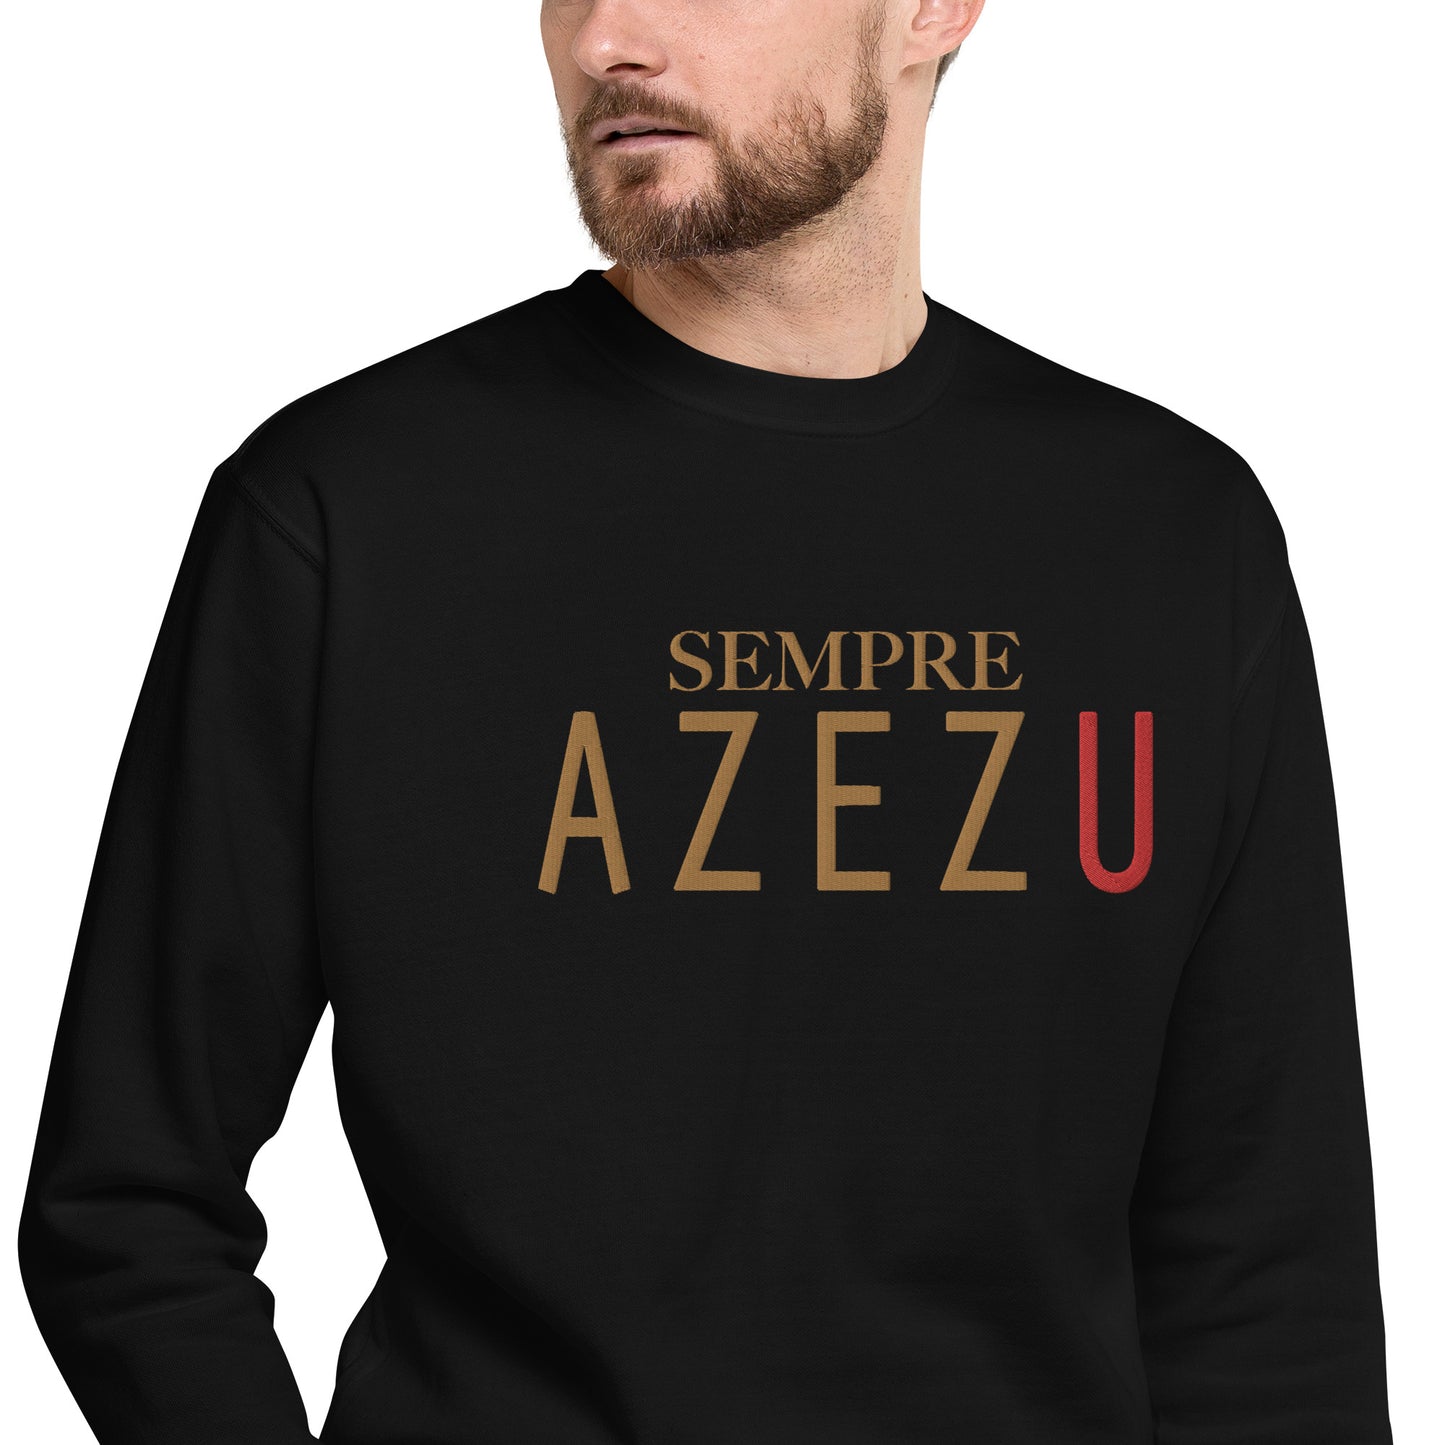 Sweatshirt premium Brodé Sempre Azezu